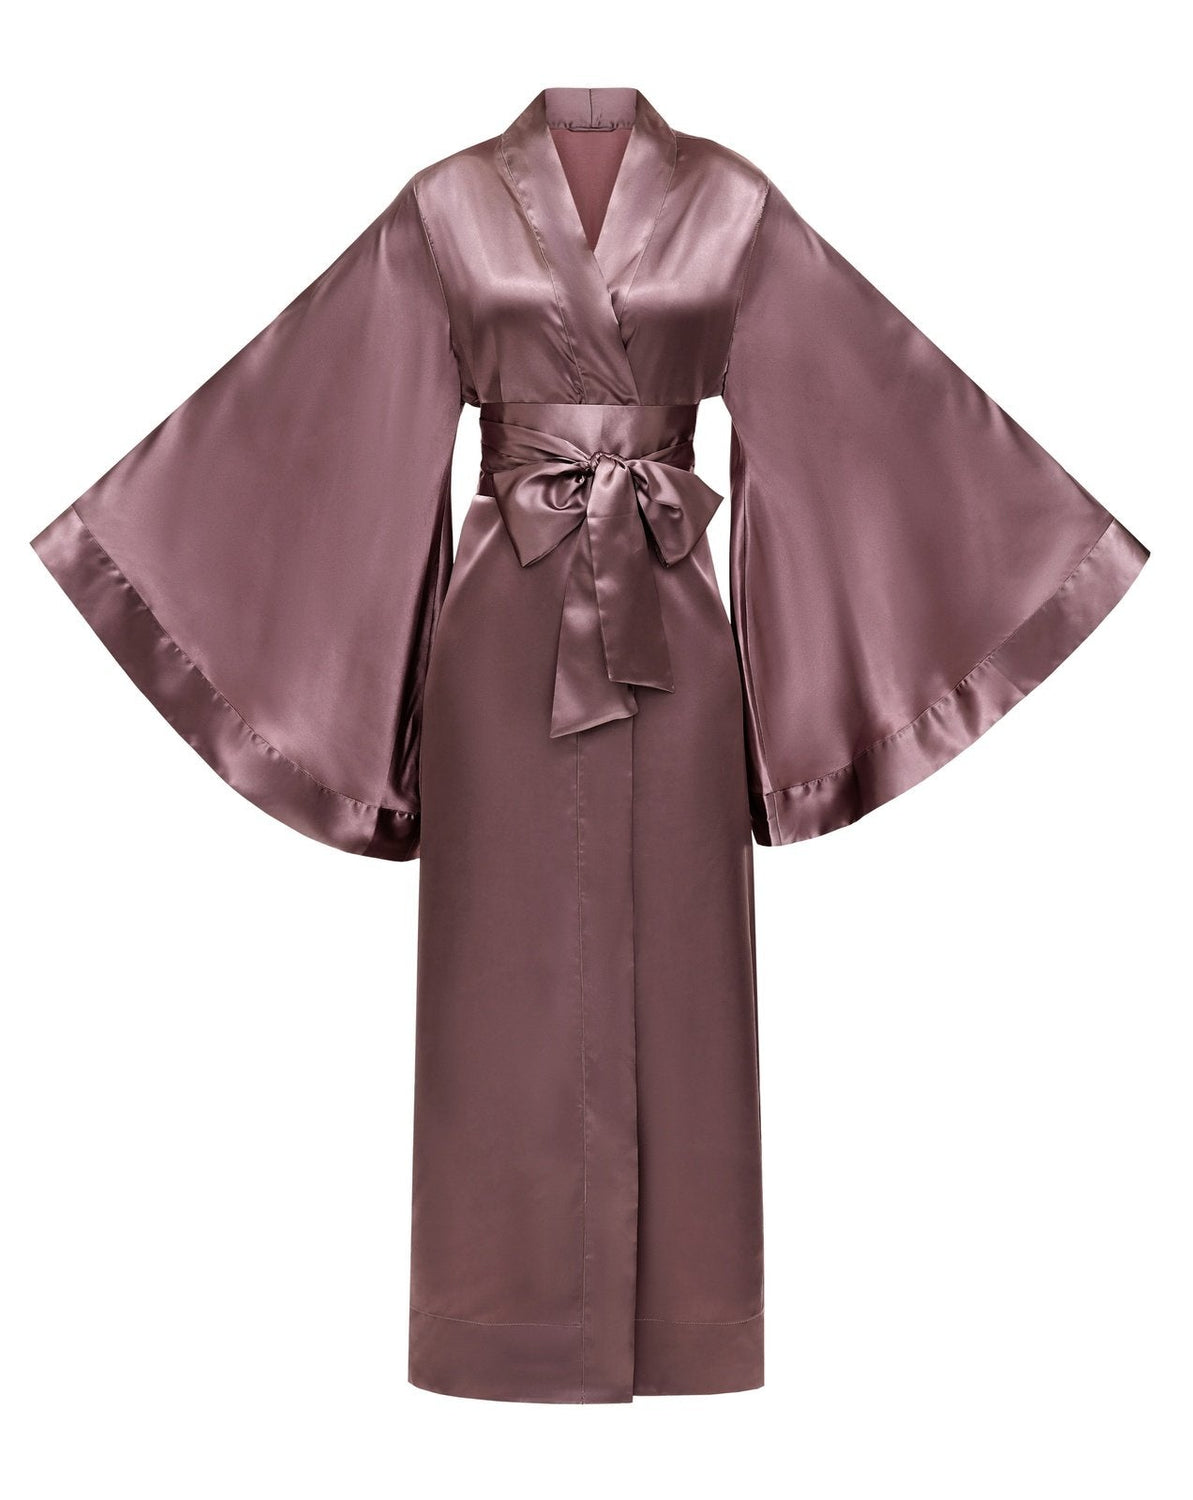 – KÂfemme Kimono Robe|Silk Satin Robe|Luxury Long Robes Kimono